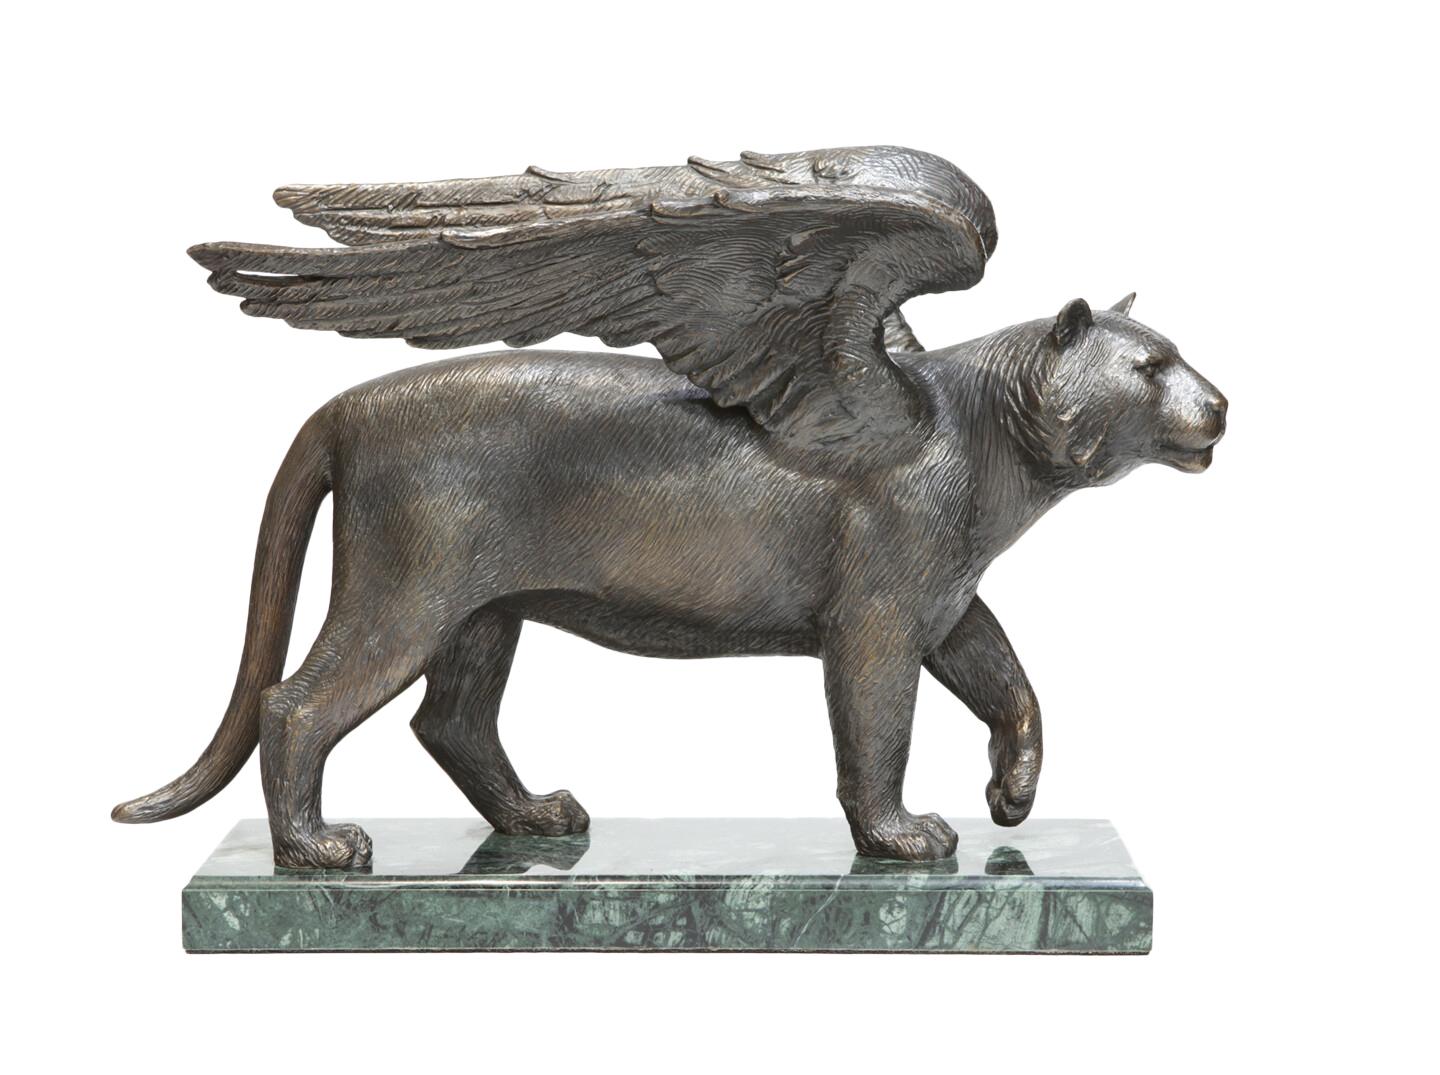 Volodymyr MYKYTENKO Figurative Sculpture - Winged Tiger, Bronze Sculpture by Volodymyr Mykytenko, 2010